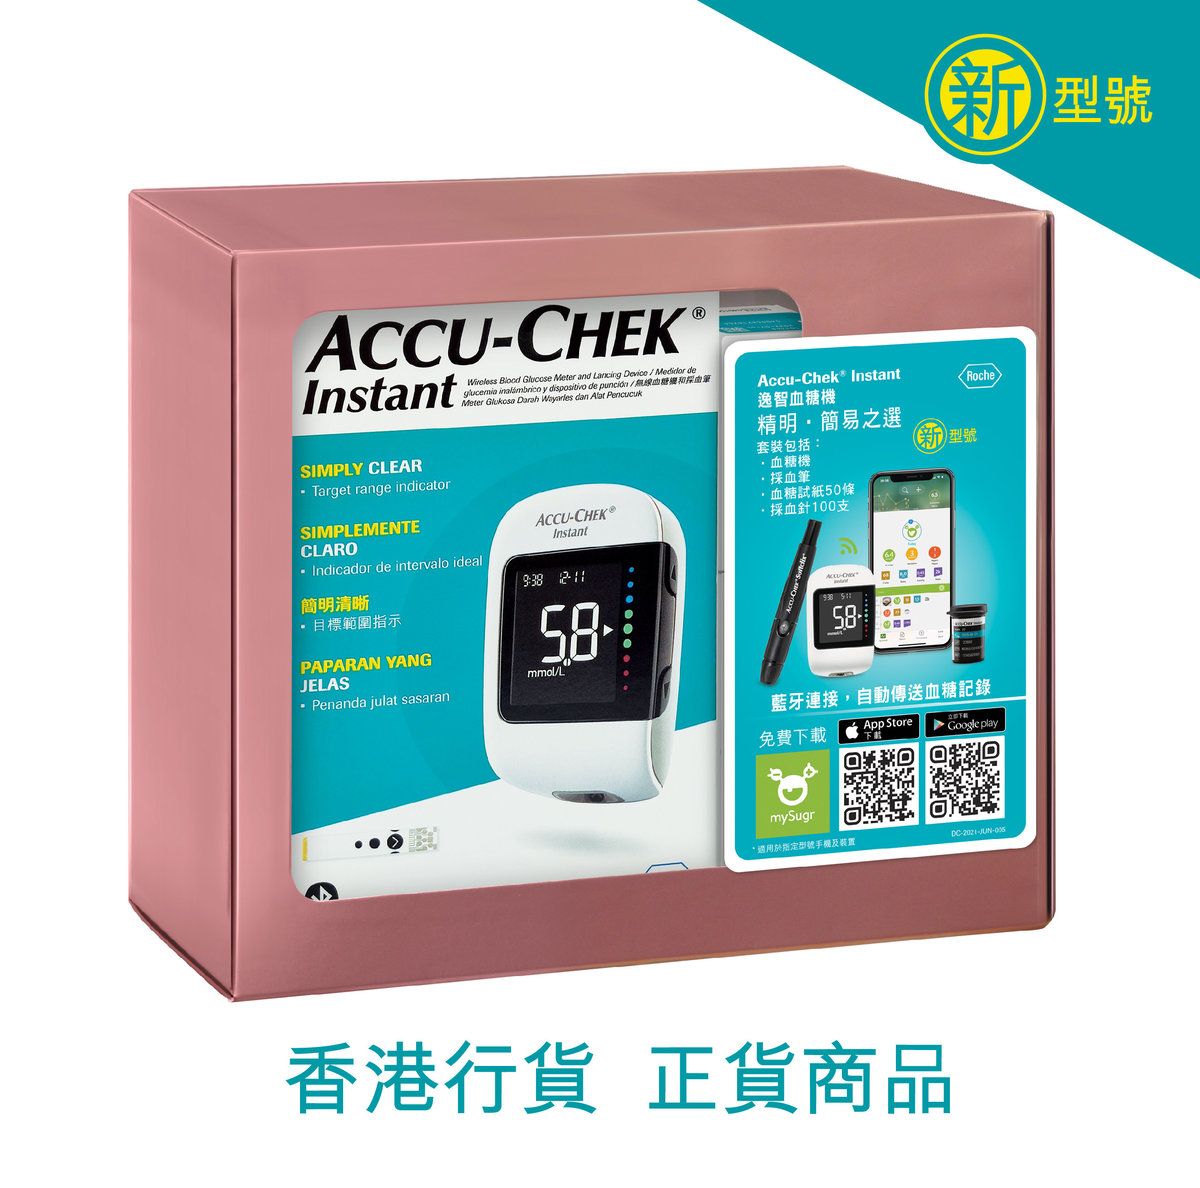 羅氏 Accu-Chek® Instant 逸智血糖機套裝(香港行貨 正貨商品) - 新型號 此日期前最佳:血糖試紙-2025年8月5日   採血針:2027年8月1日